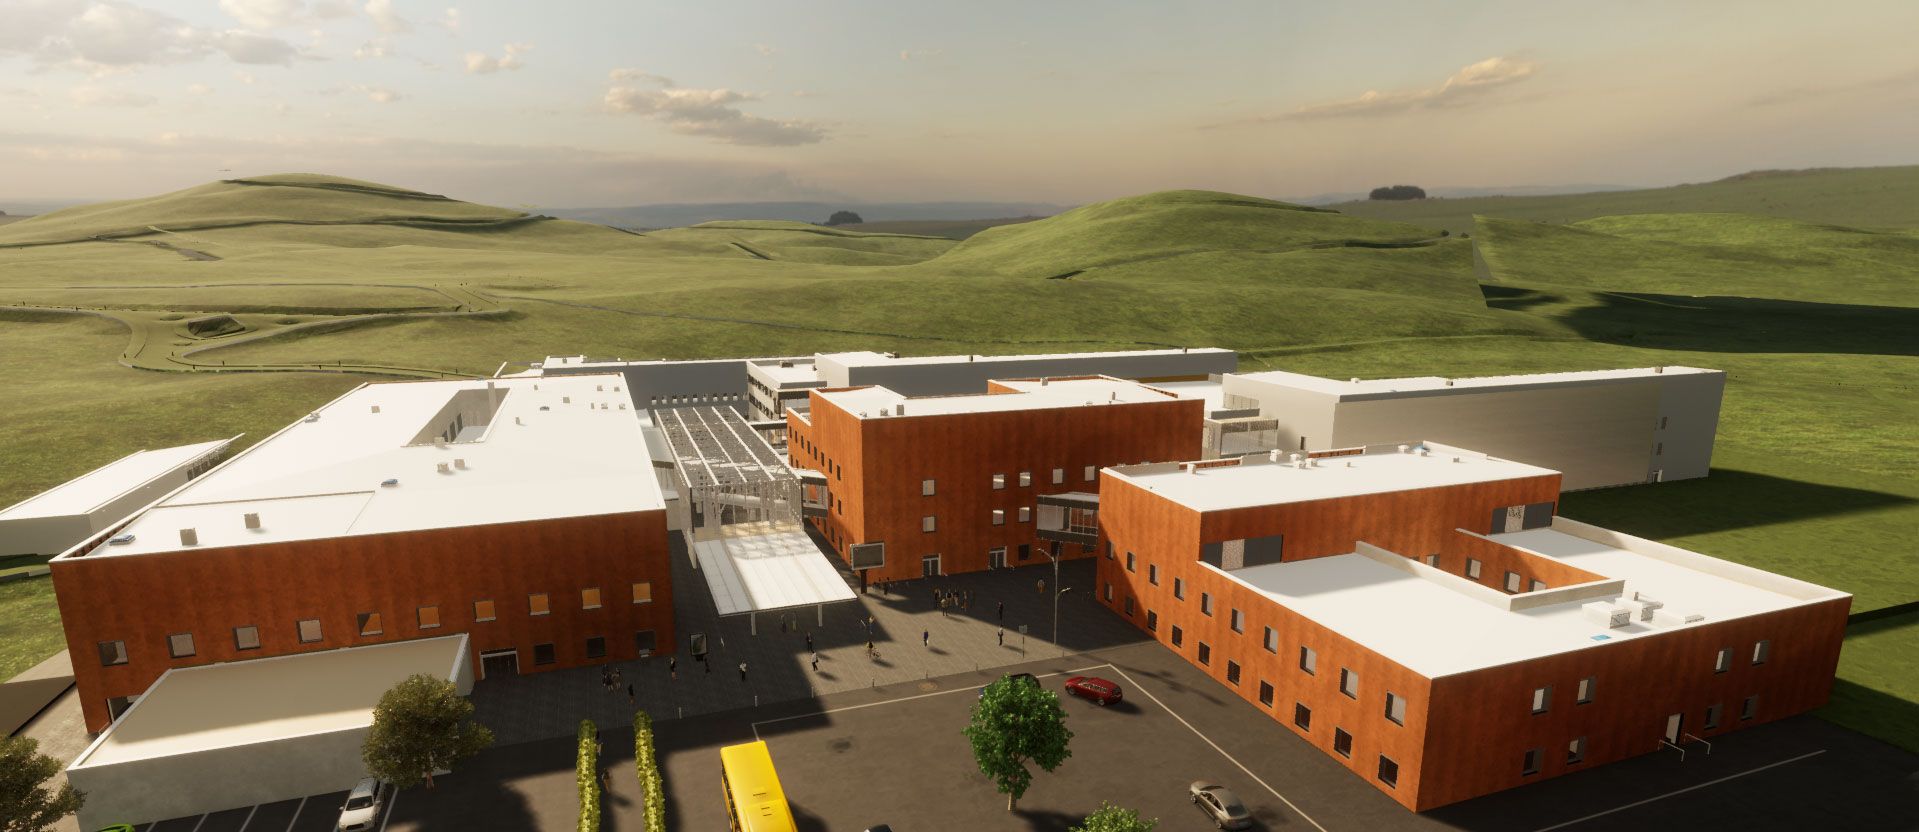 Nuovo ospedale di Fermo - image 8